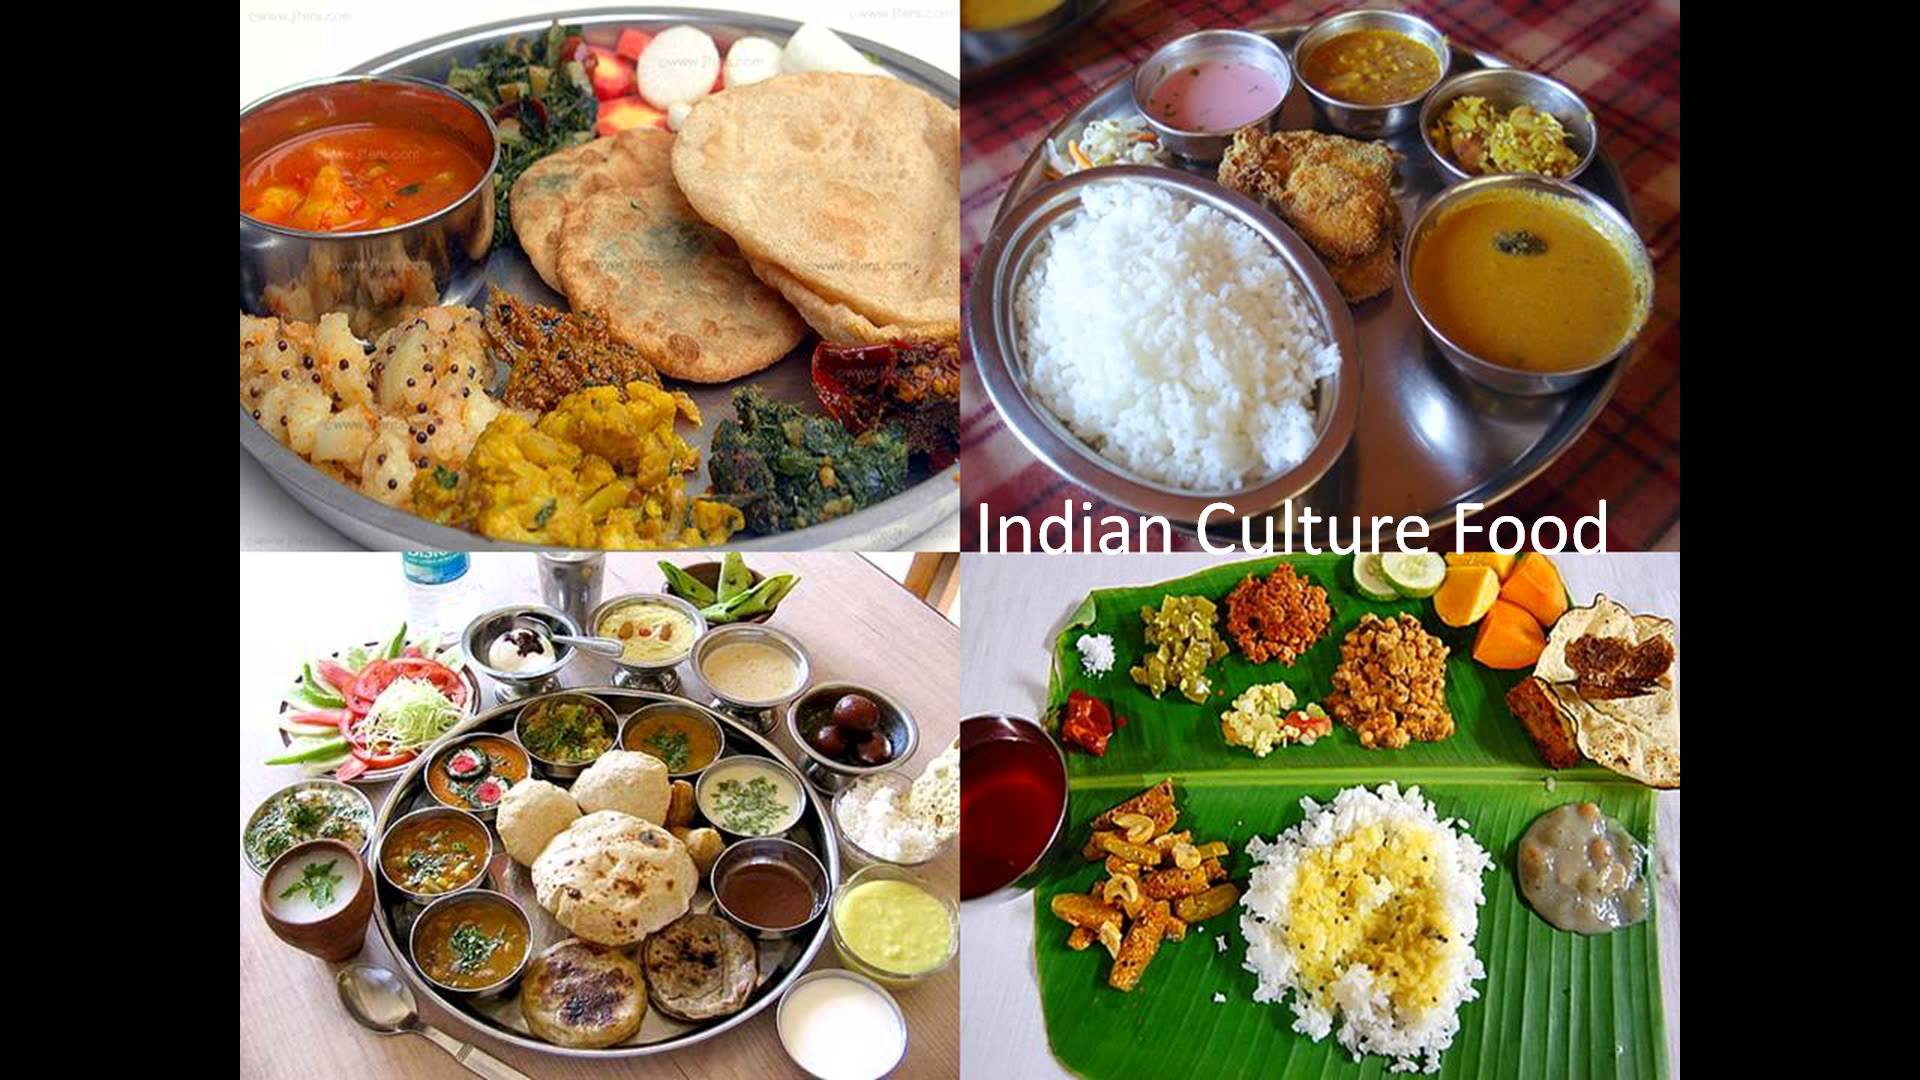 1920x1080 Văn hóa Ấn Độ Ẩm thực, Món ăn Ấn Độ - Văn hóa Ấn Độ, Món ăn Ấn Độ - Thực phẩm